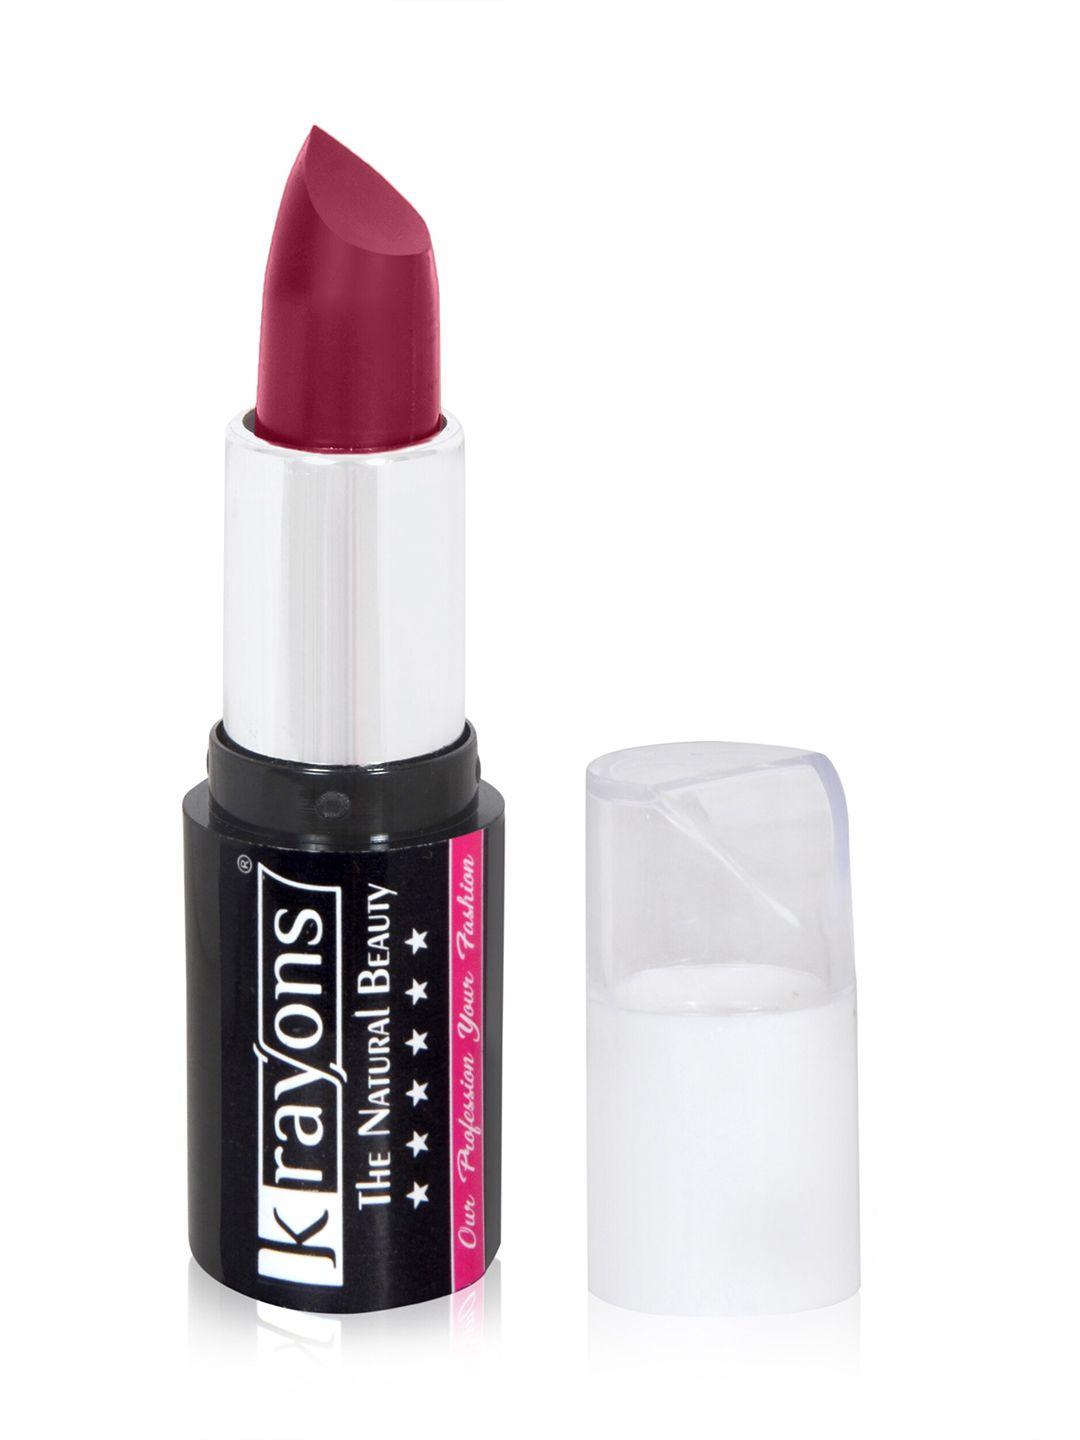 krayons moisturizing matte waterproof & long-lasting lipstick 4 g -plum pink 11